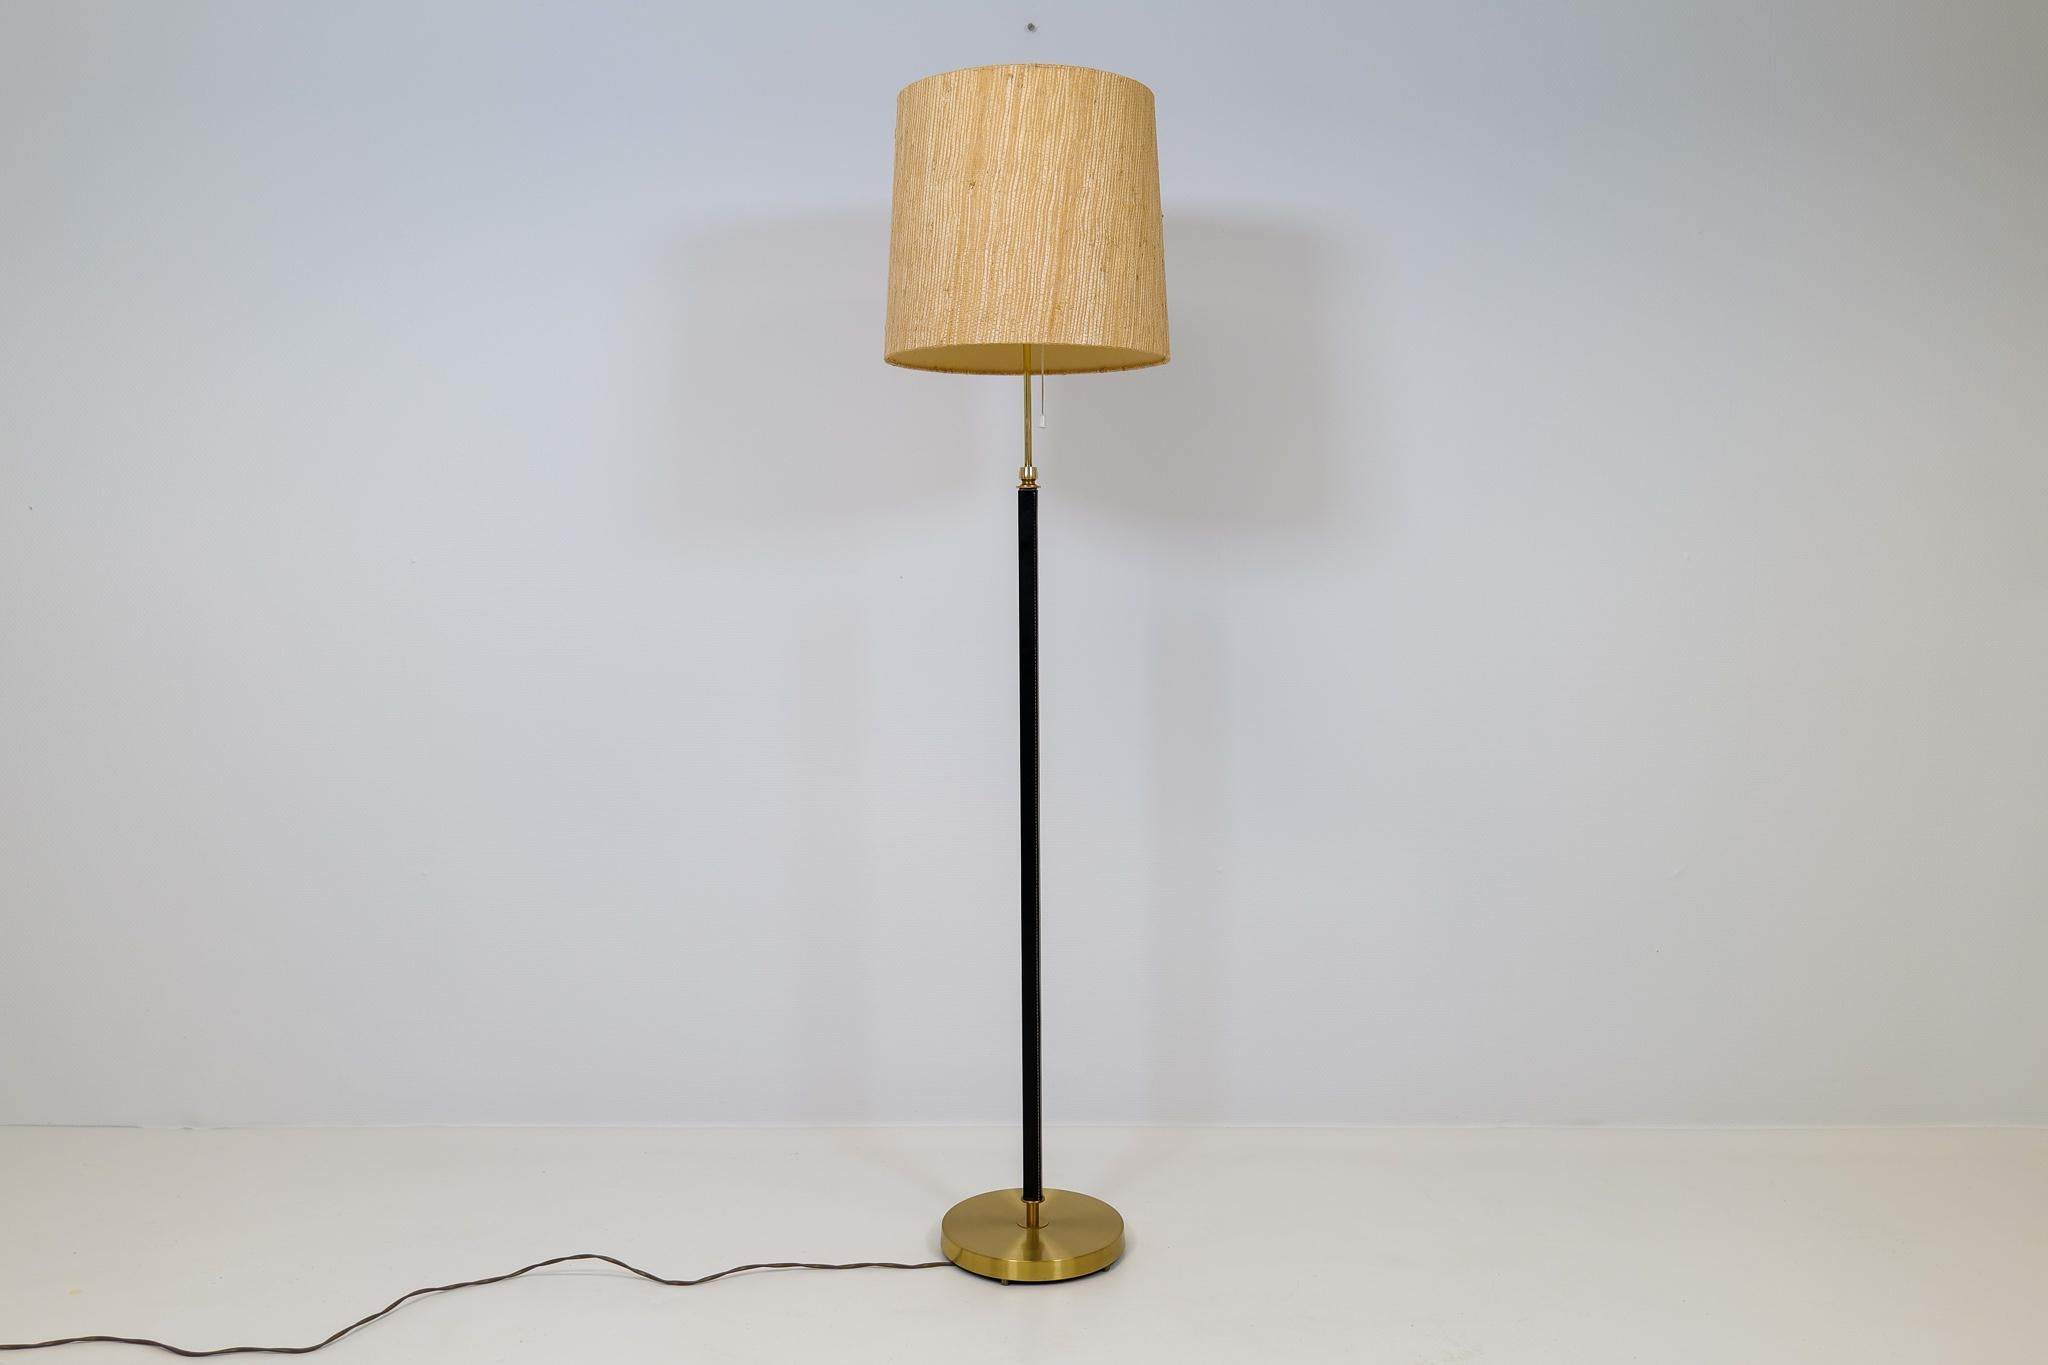 Cette lampe a été fabriquée en Suède par Falkenbergs Belysning. L'association du laiton et du cuir teinté noir fait de cette lampe une icône. L'abat-jour original s'accorde bien avec la structure de la lampe.

Bon état de fonctionnement avec